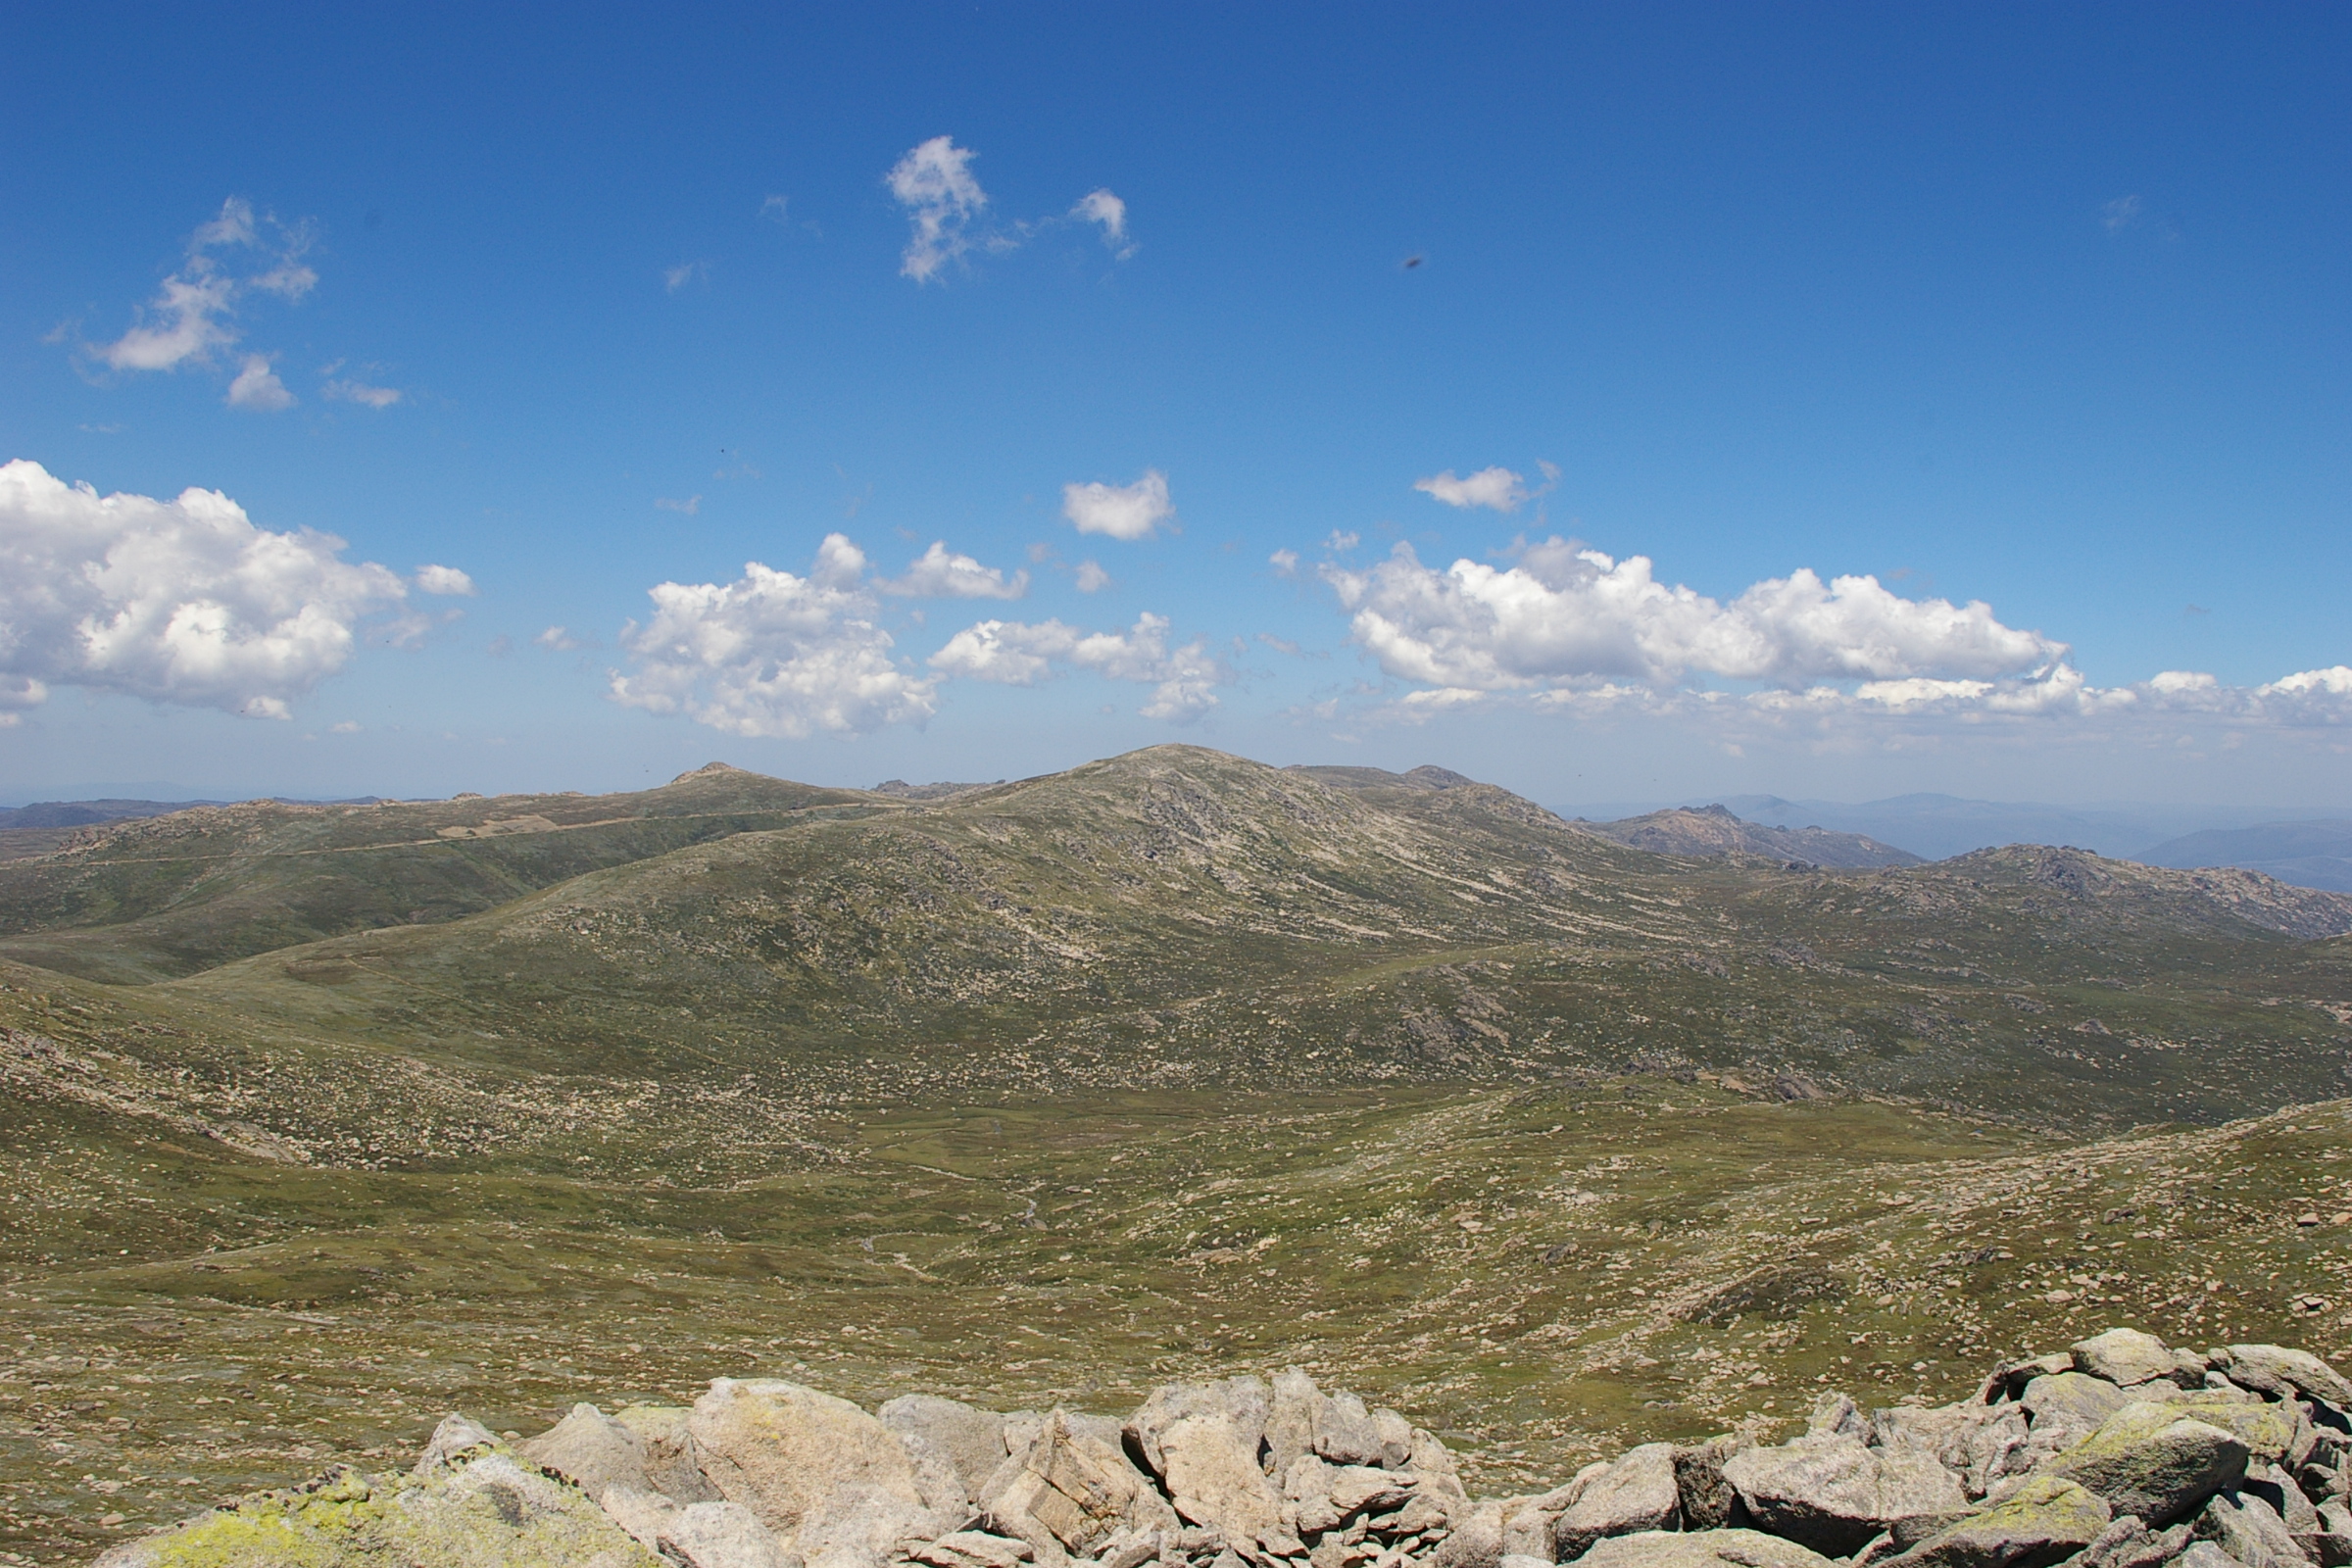 Mount Kosciuszko - Wikipedia